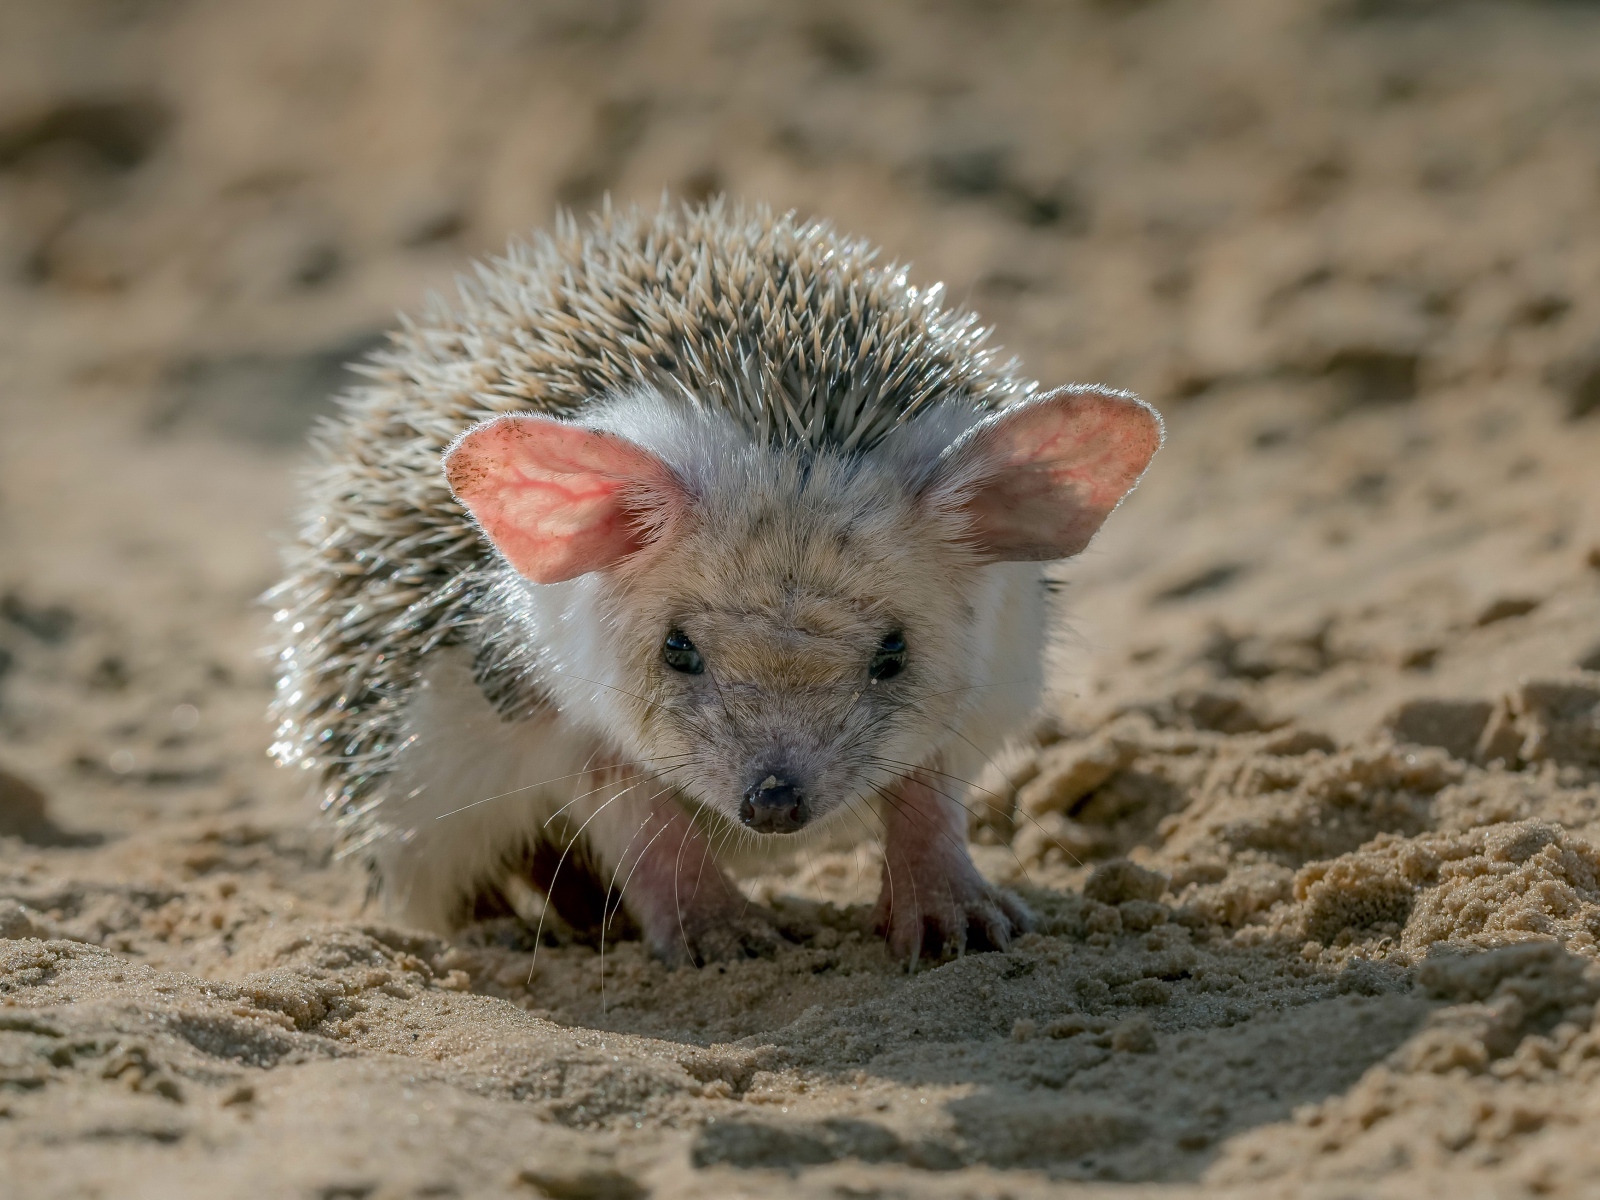 Колючий еж с большими ушами стоит на песке